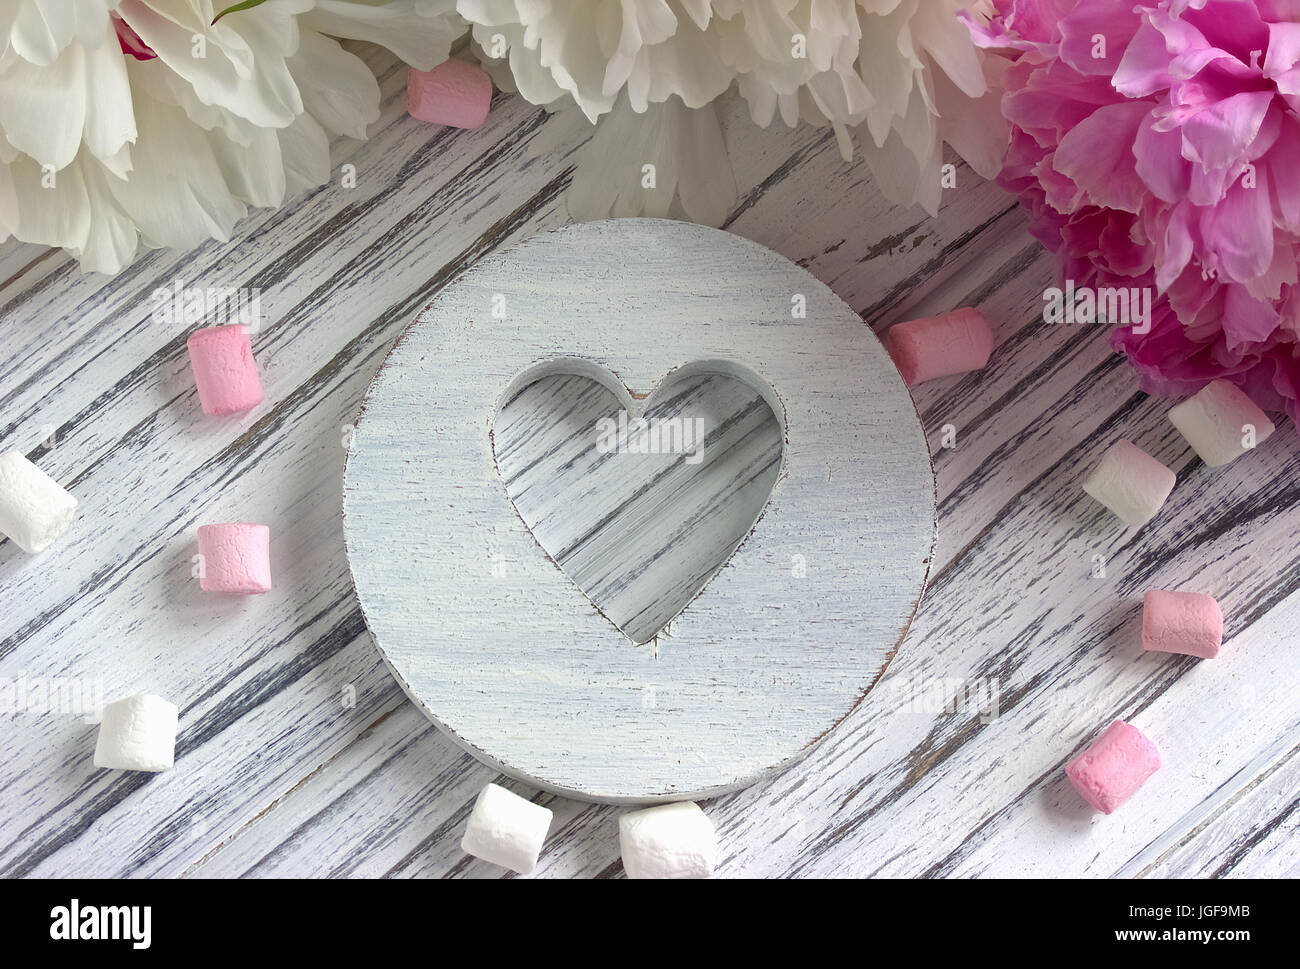 Fleurs de pivoines rose avec coeur en bois blanc de la guimauve sur un fond en bois blanc - stock image Banque D'Images